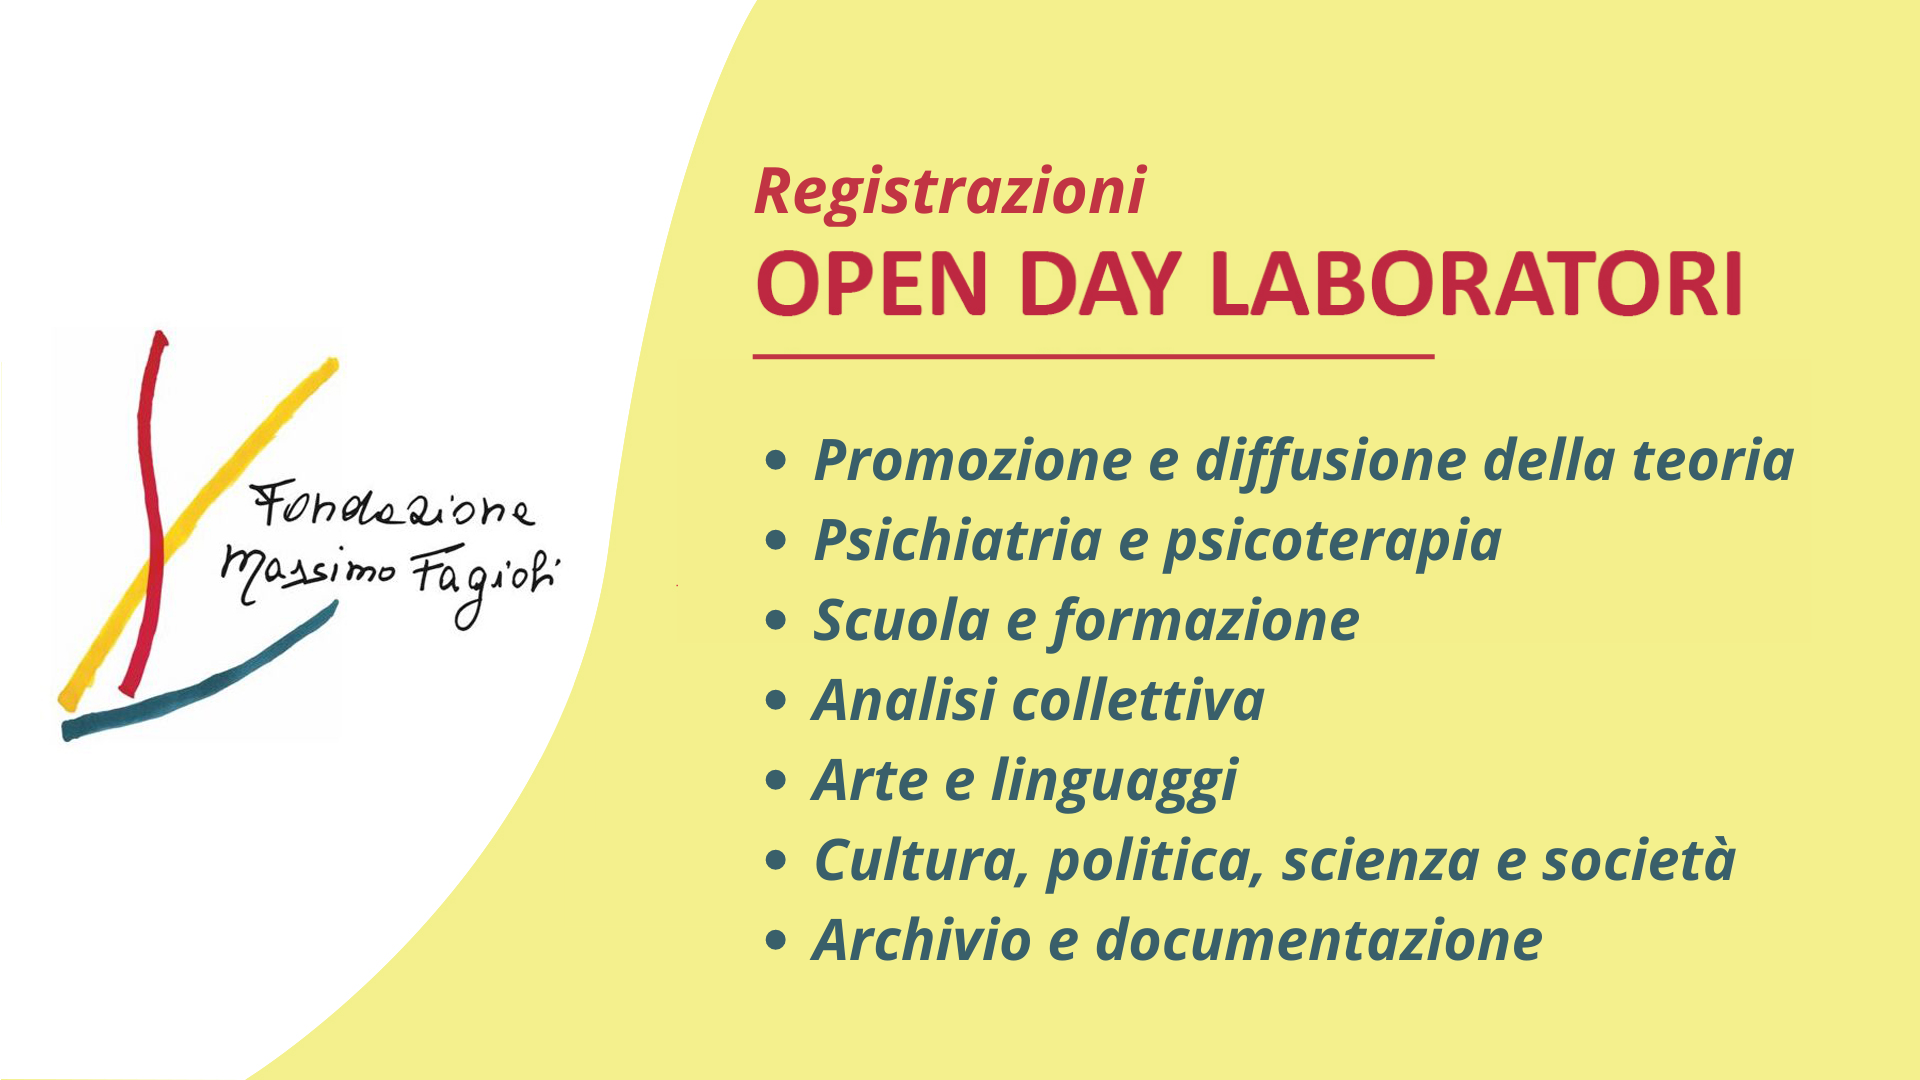 Registrazione Open Day Laboratori Fondazione Massimo Fagioli